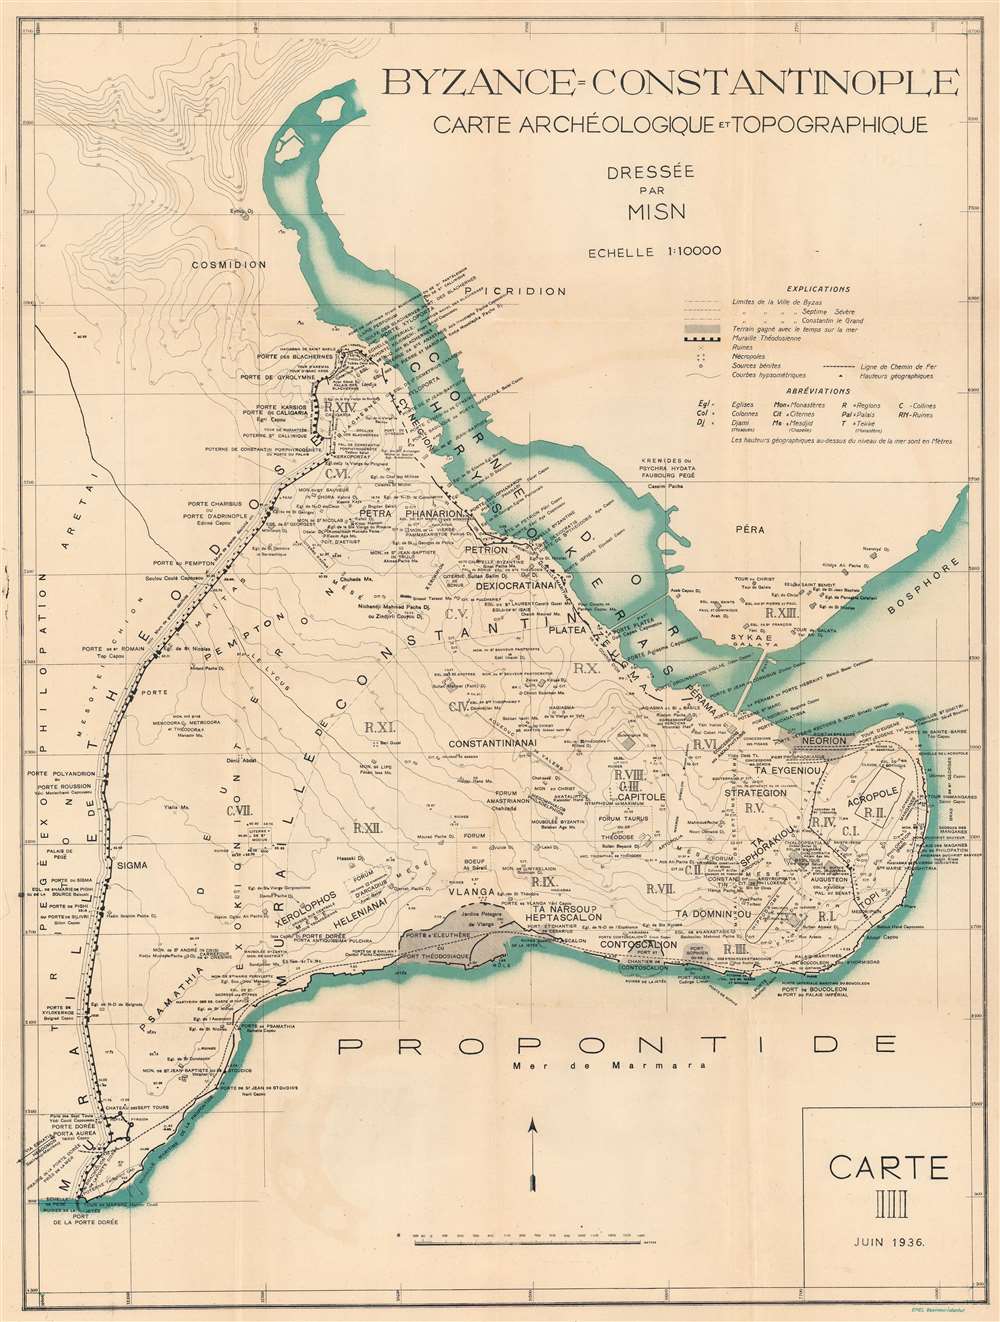 Carte Topographique et Archéologique de Constantinople au Moyen Âge. - Main View